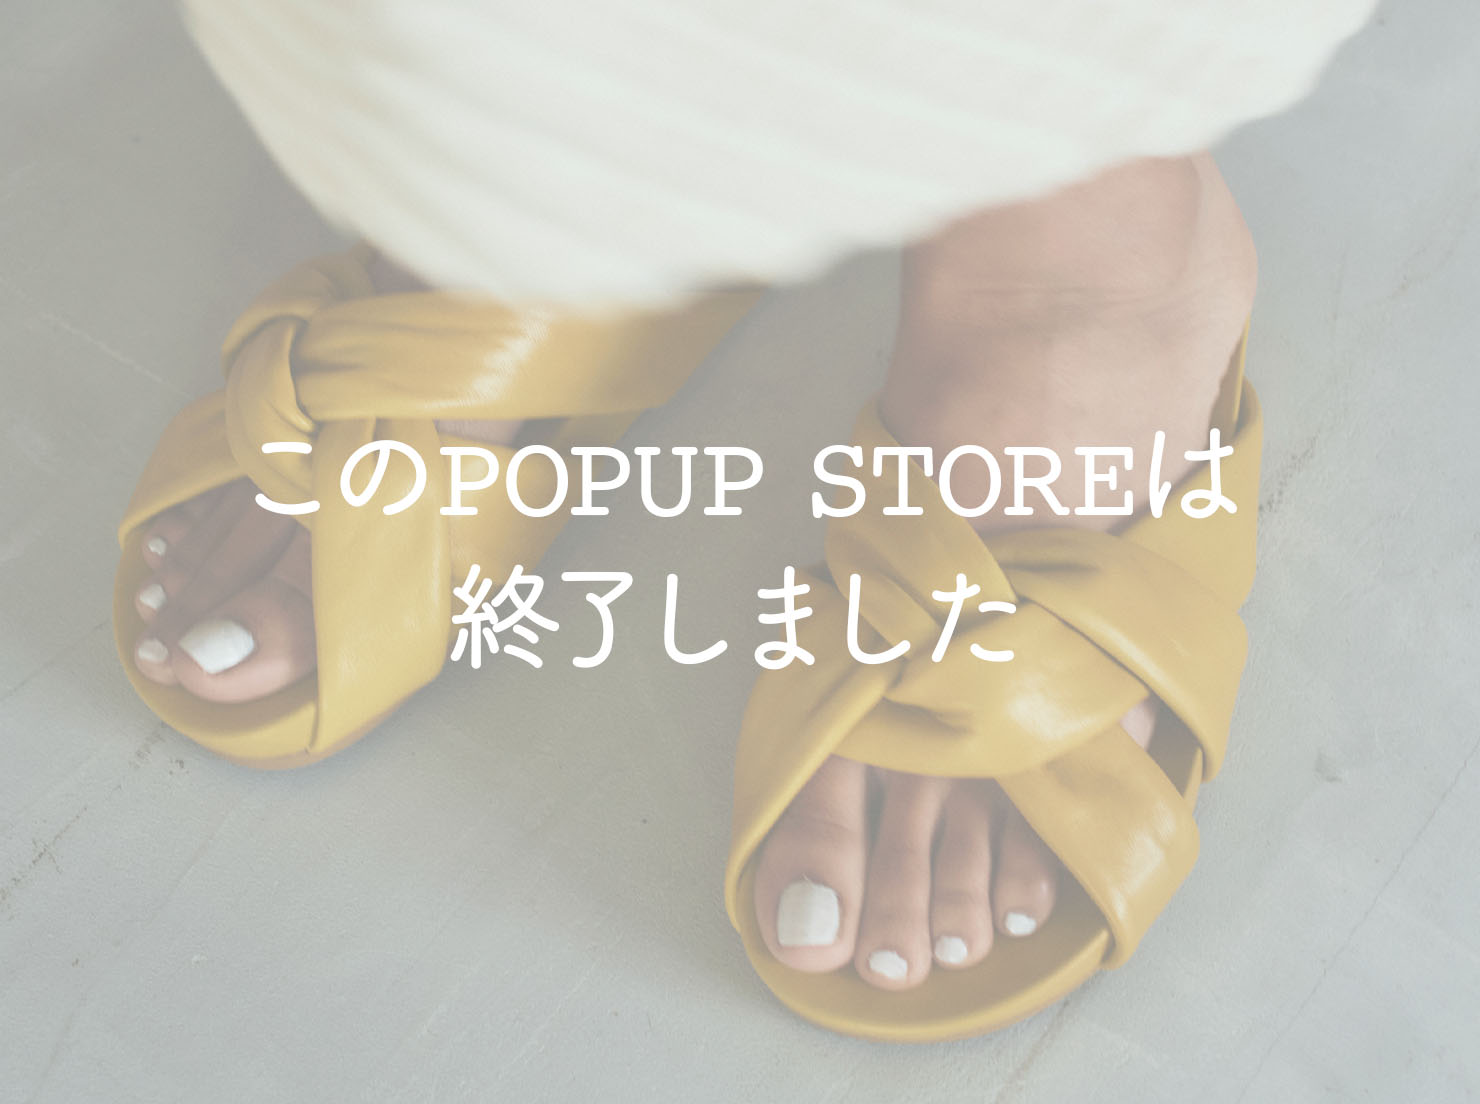 西武渋谷店 POPUP STORE(こちらのPOPUPは終了しました)